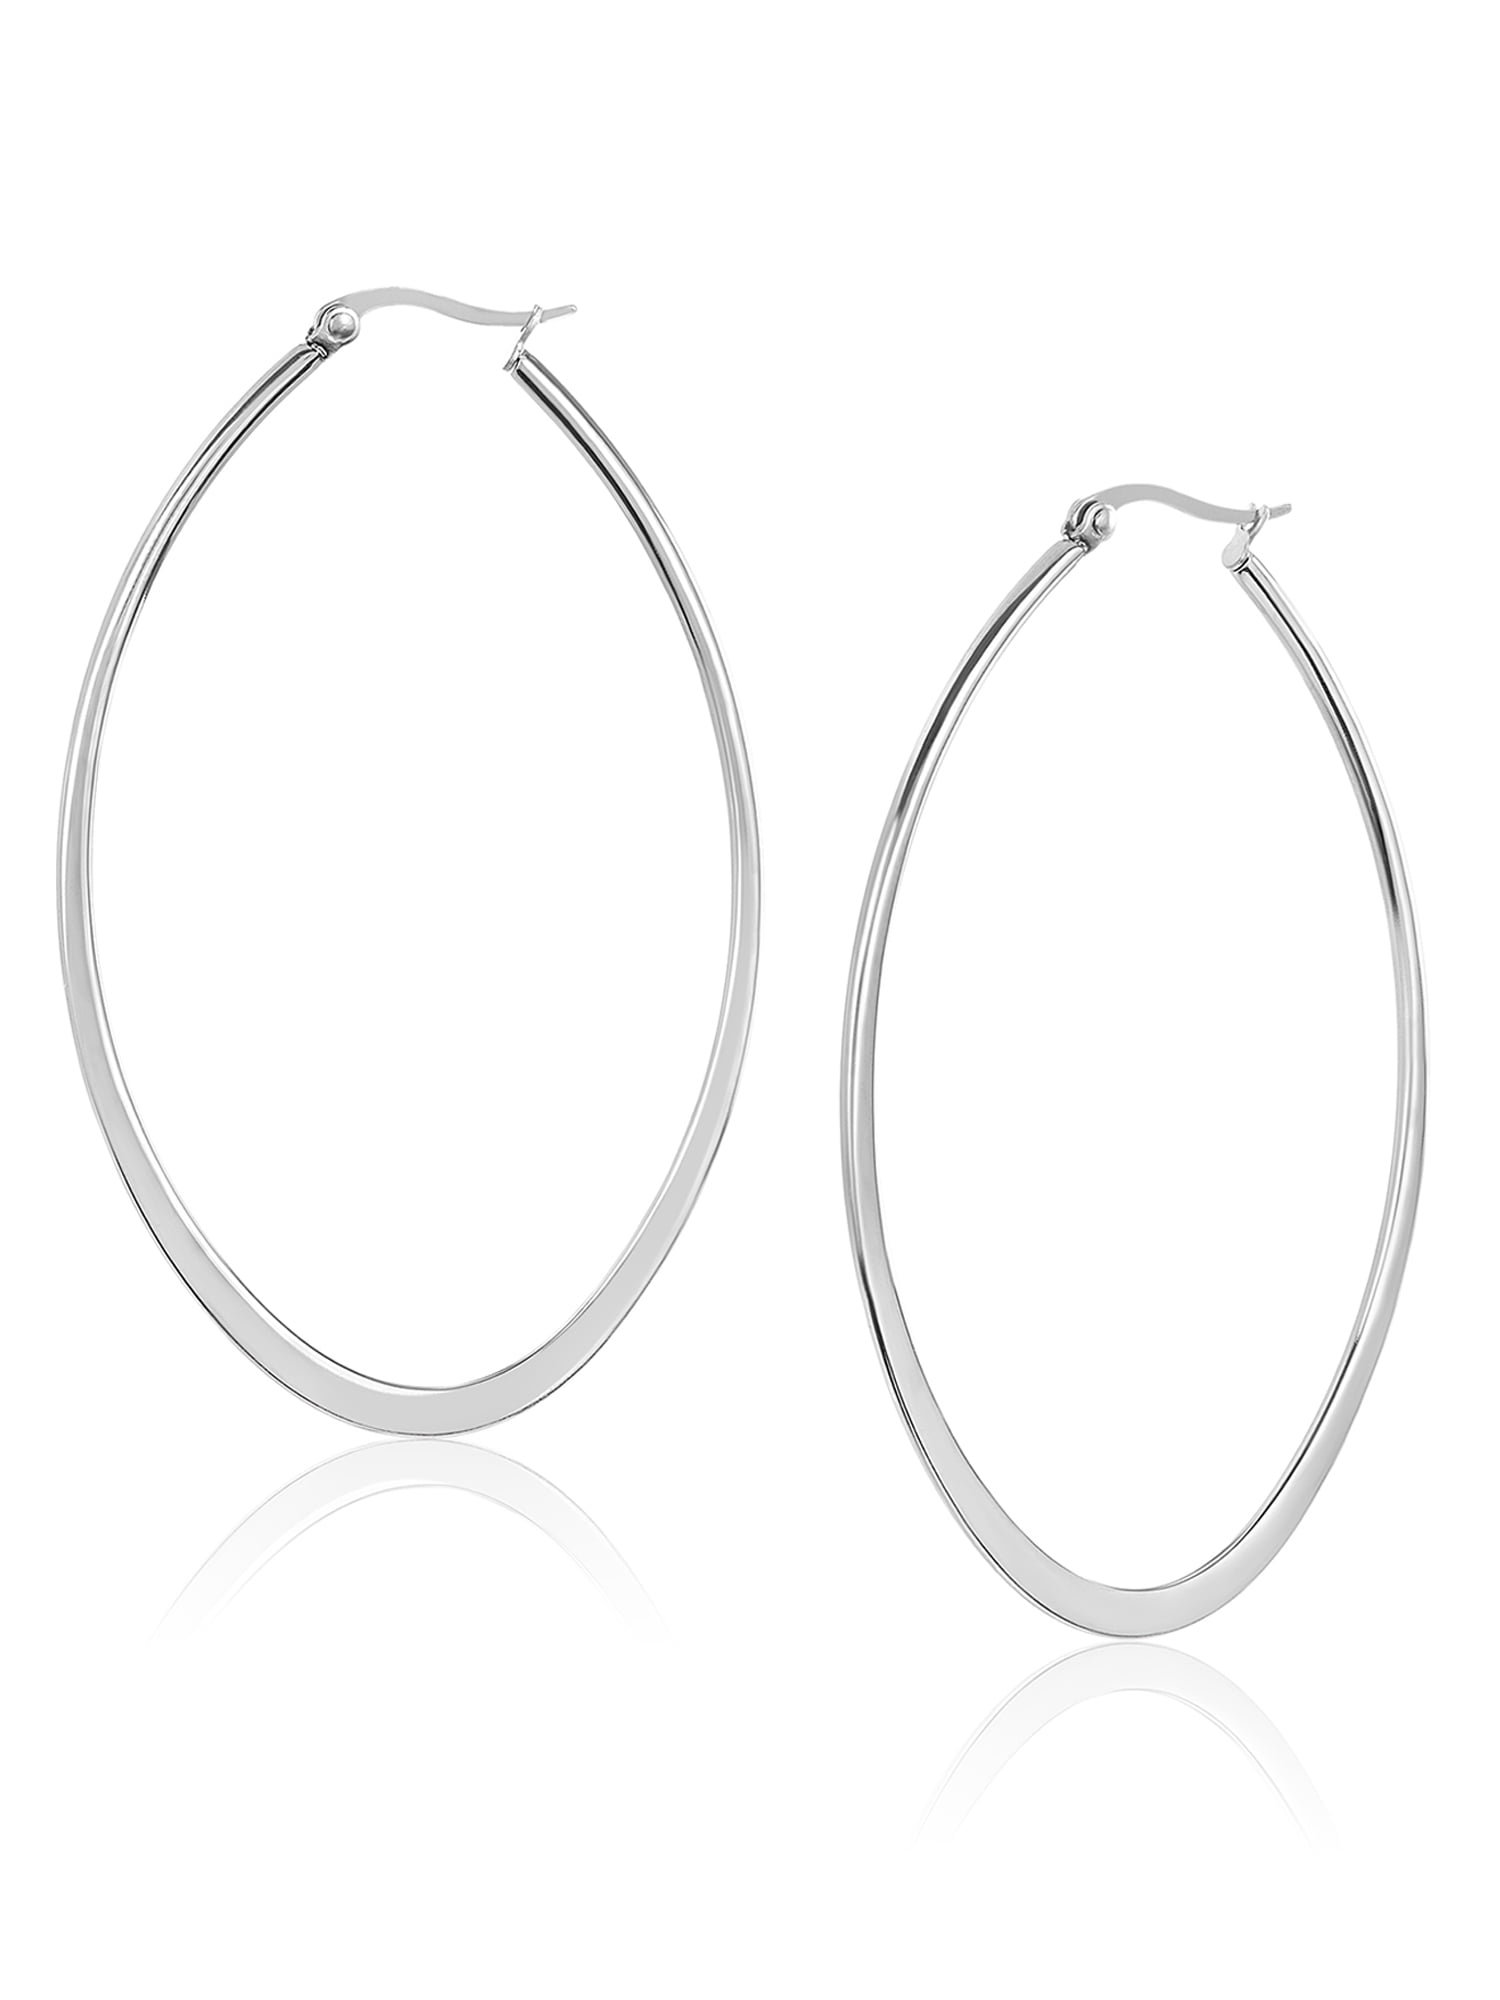 Women's Stainless Steel Engagement Jewelry Elegant Big Oval Hoop Silver Earrings 